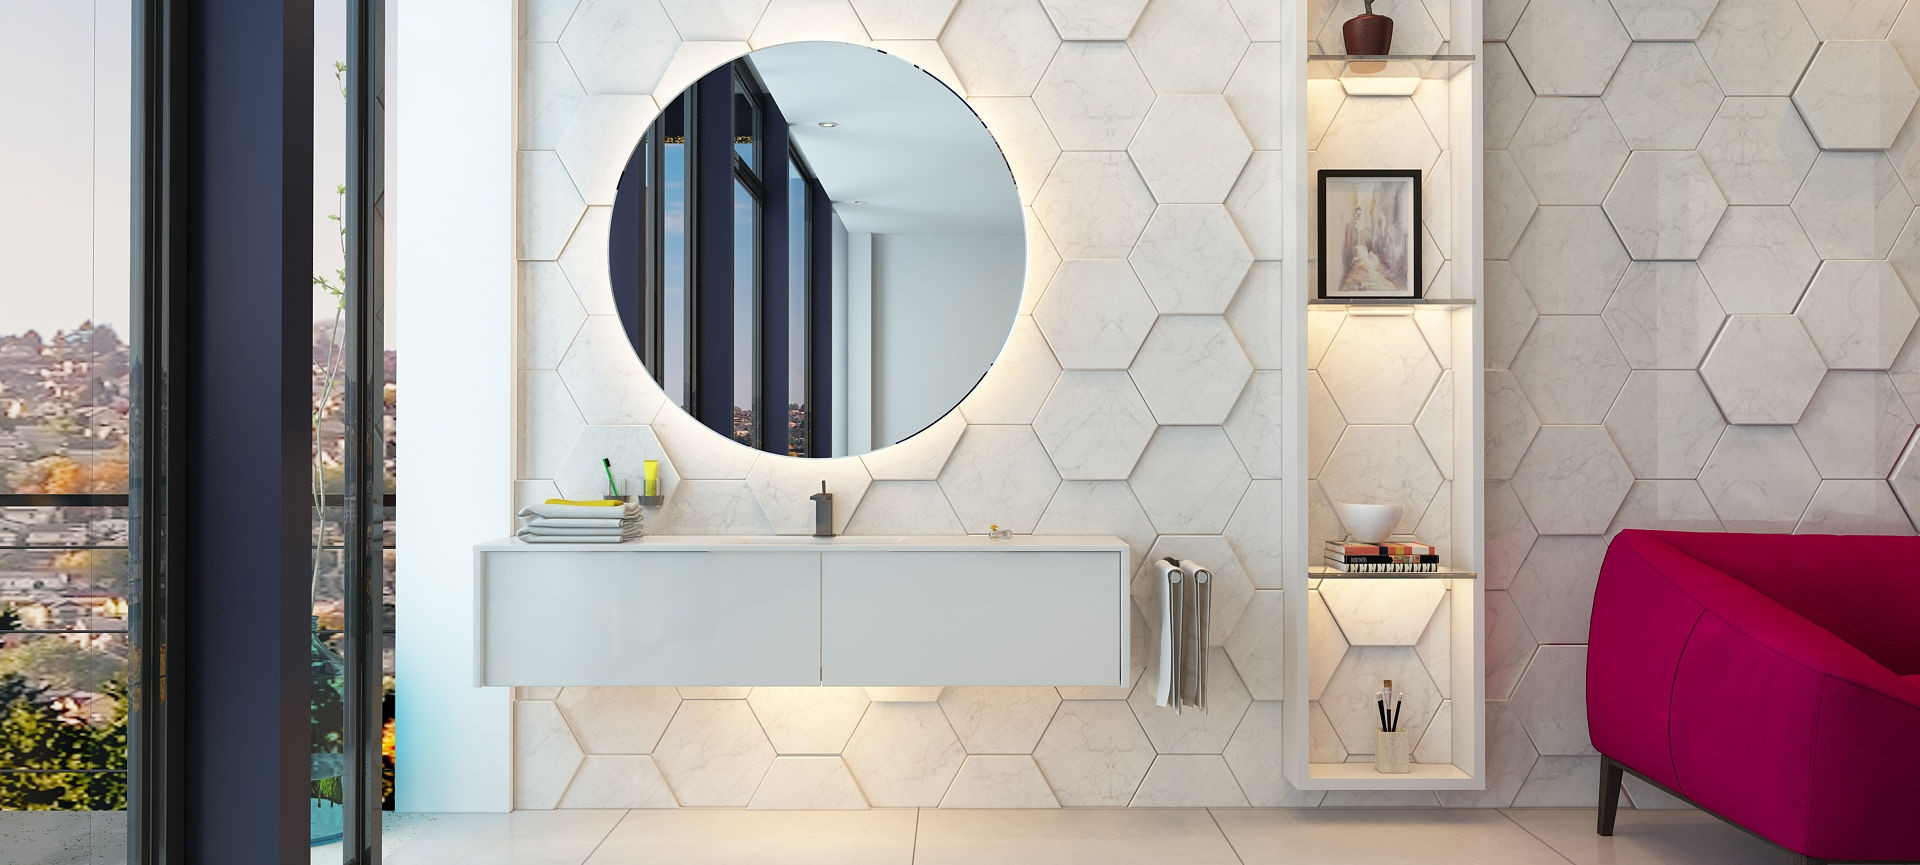 Badspiegel Kaufen Mit Spiegel Konfigurator | Spiegelshop within Badezimmerspiegel Kaufen